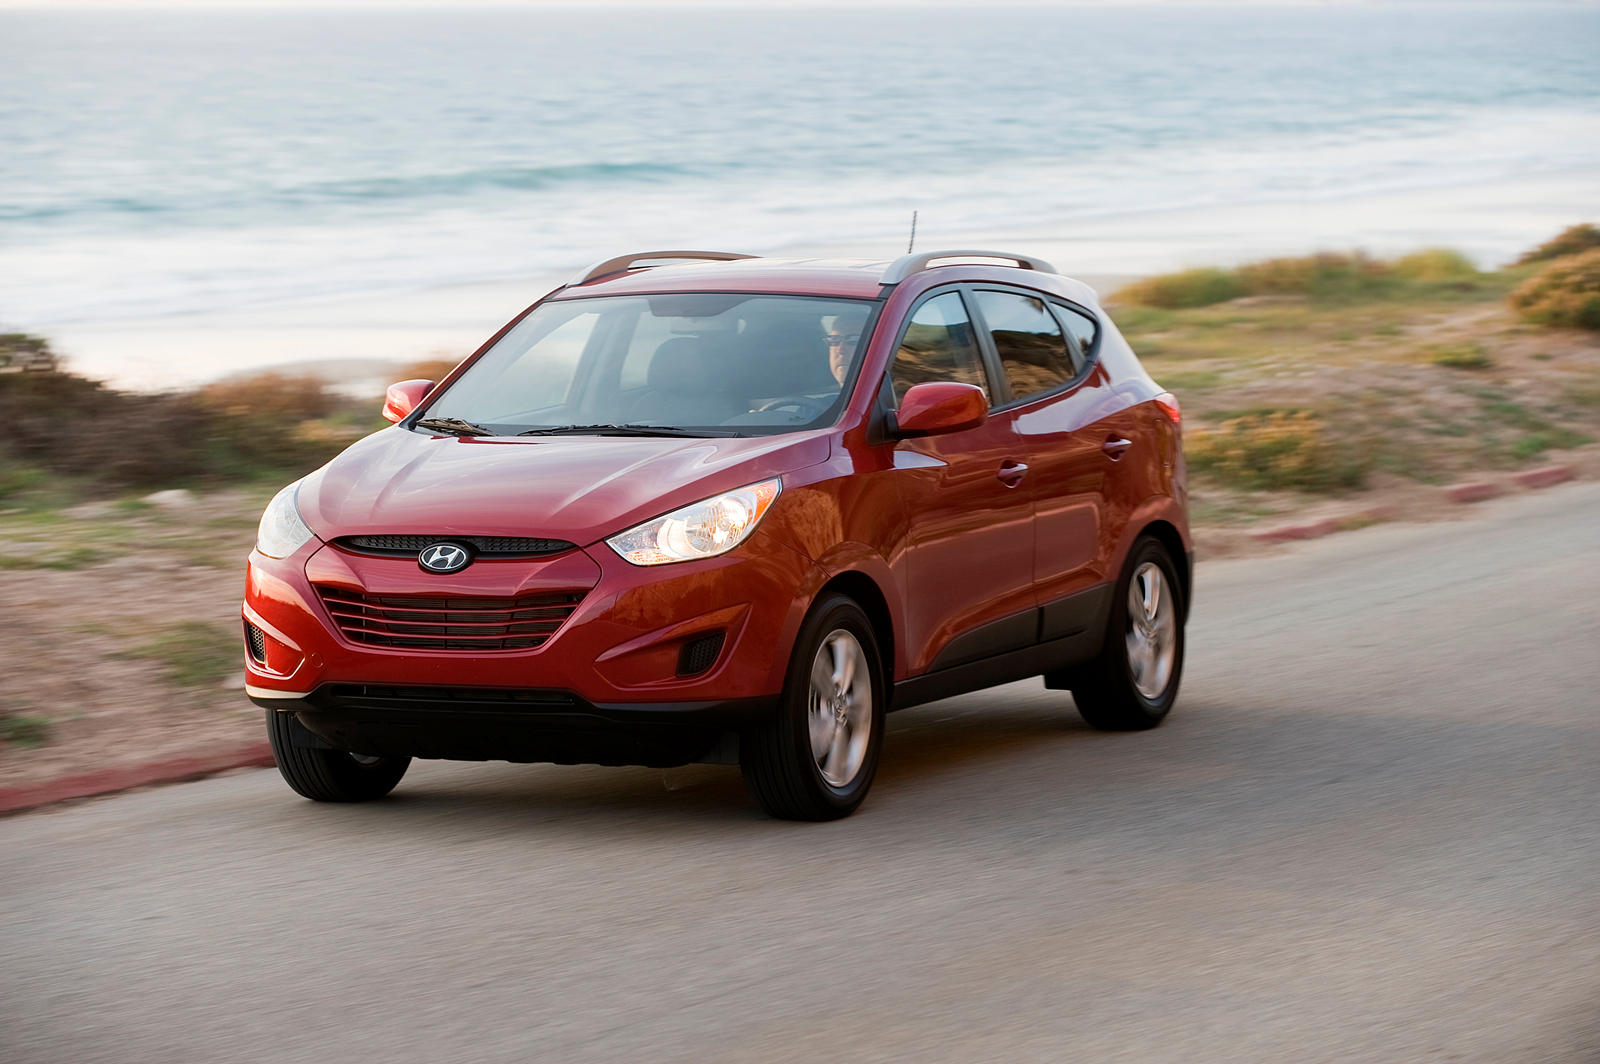 2012 Hyundai Tucson Review Trims Specs Price New Interior Features 